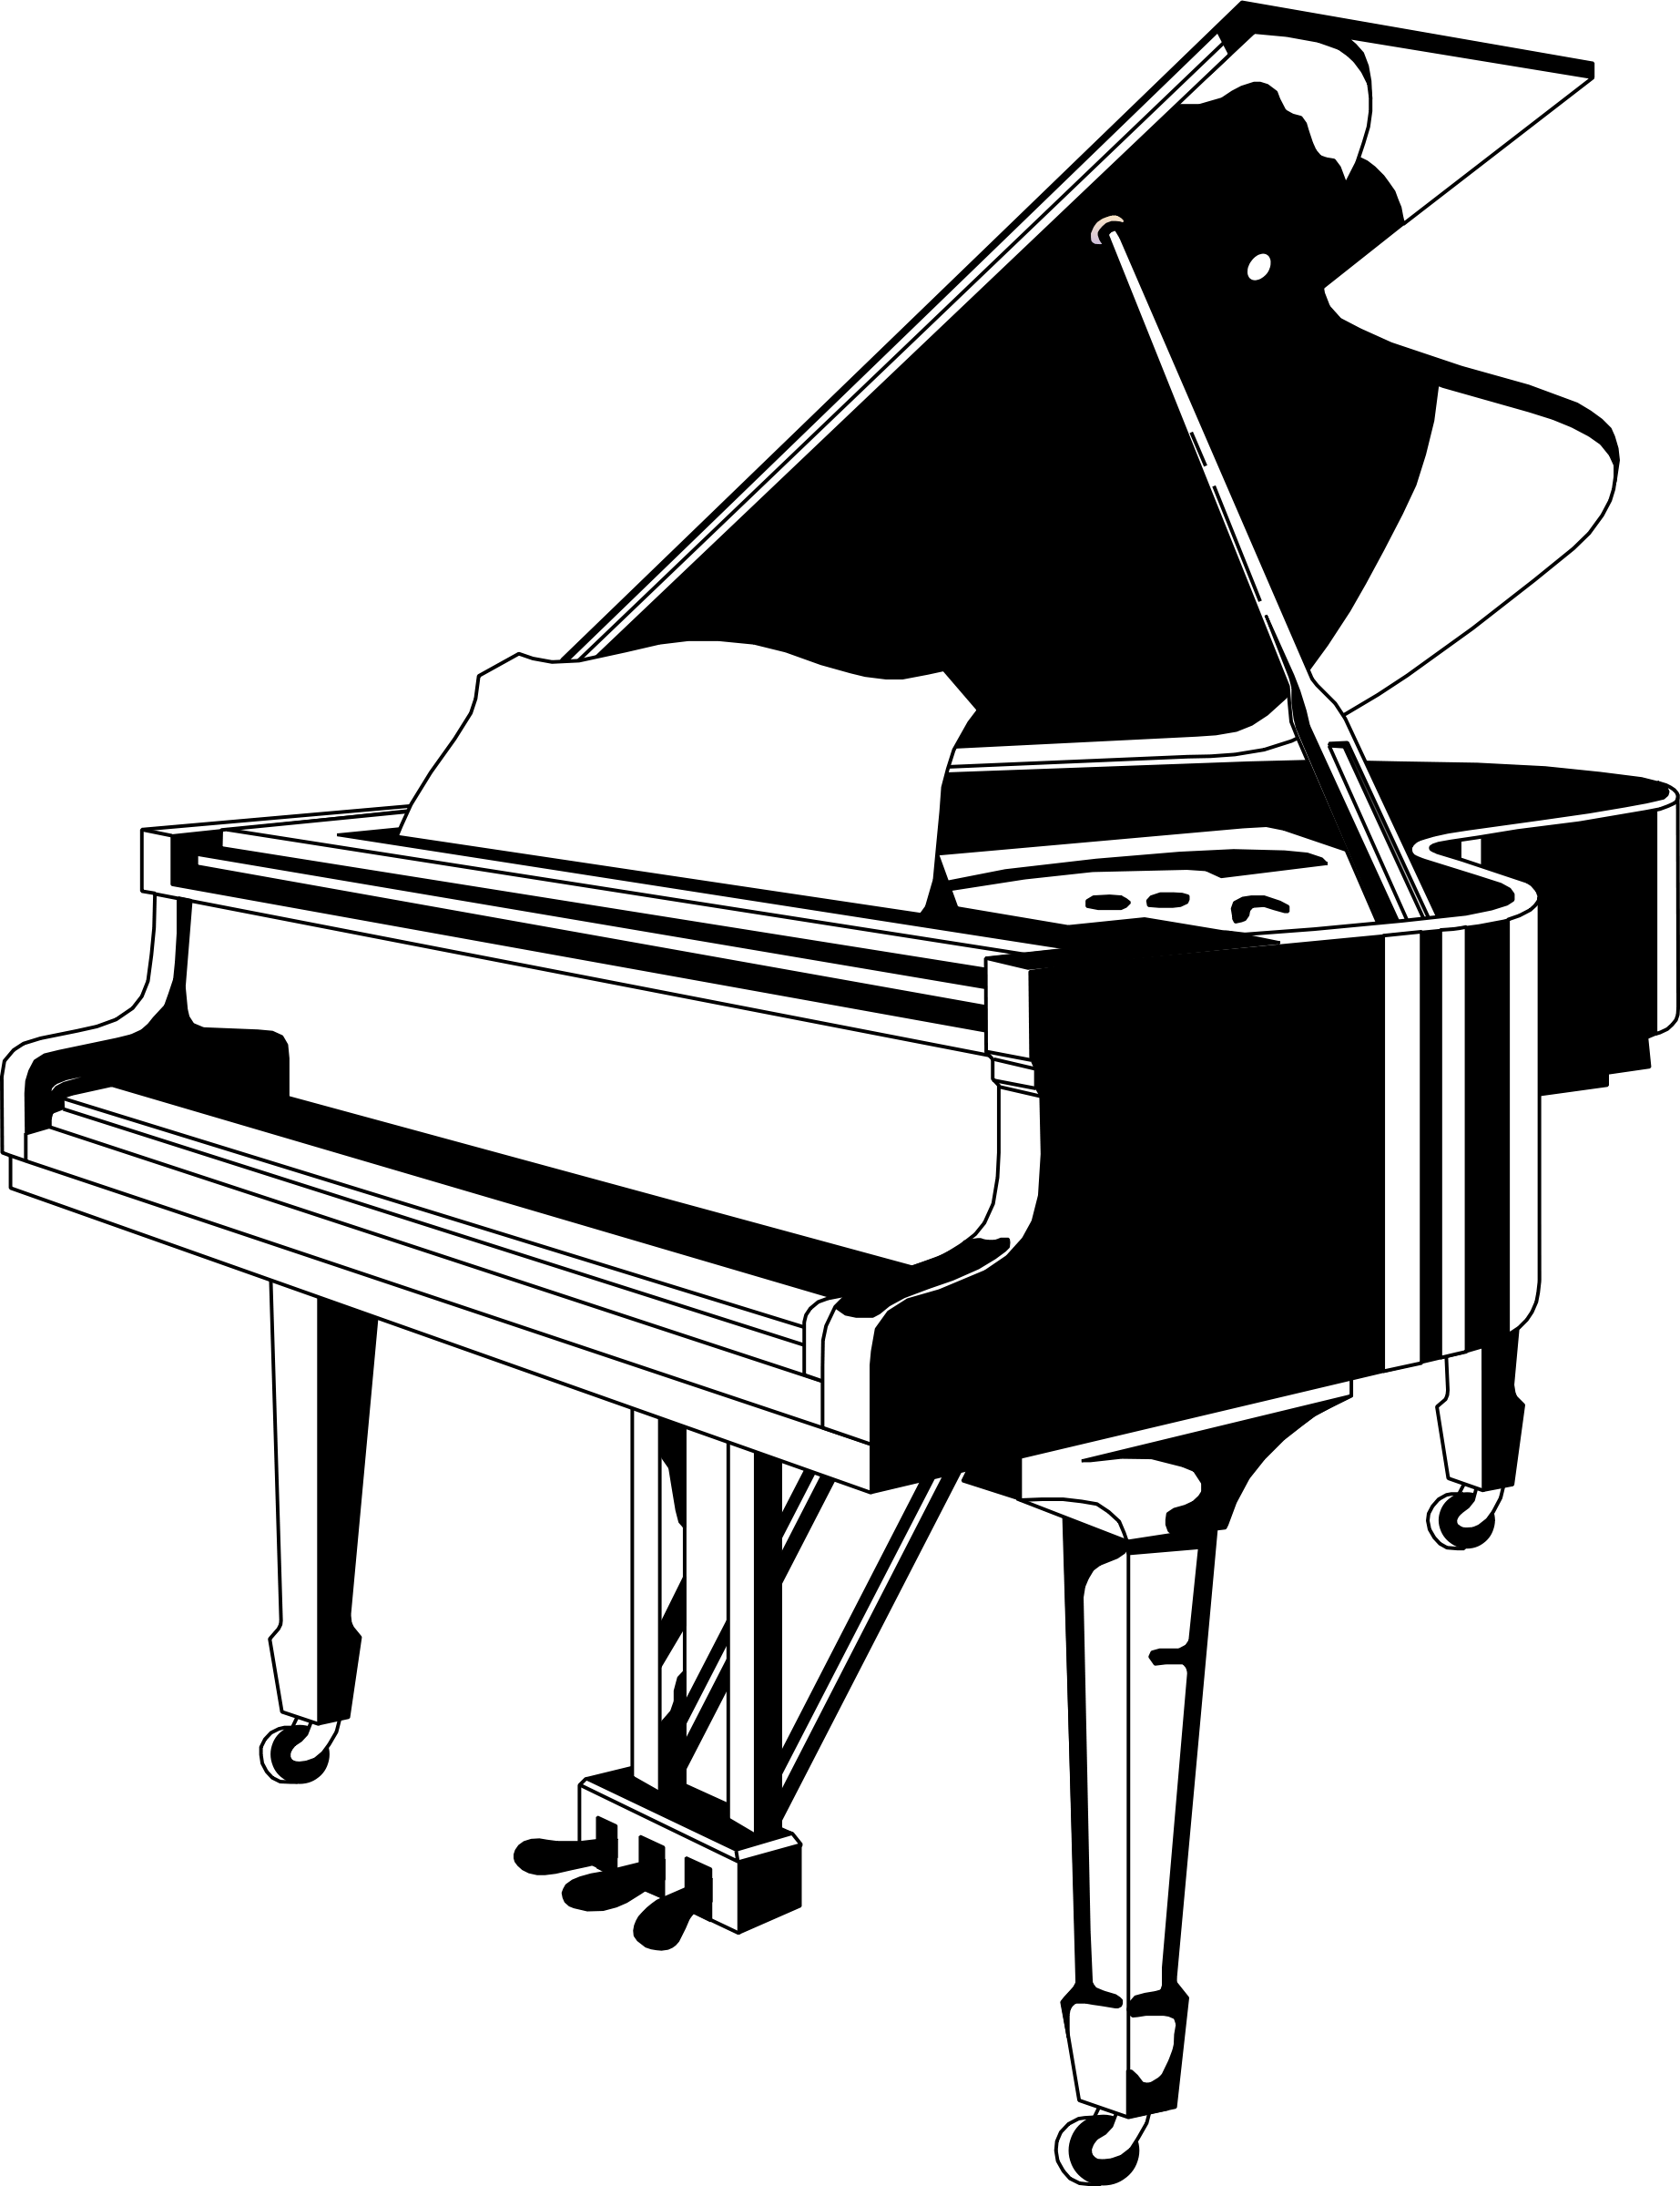 black grand piano clipart